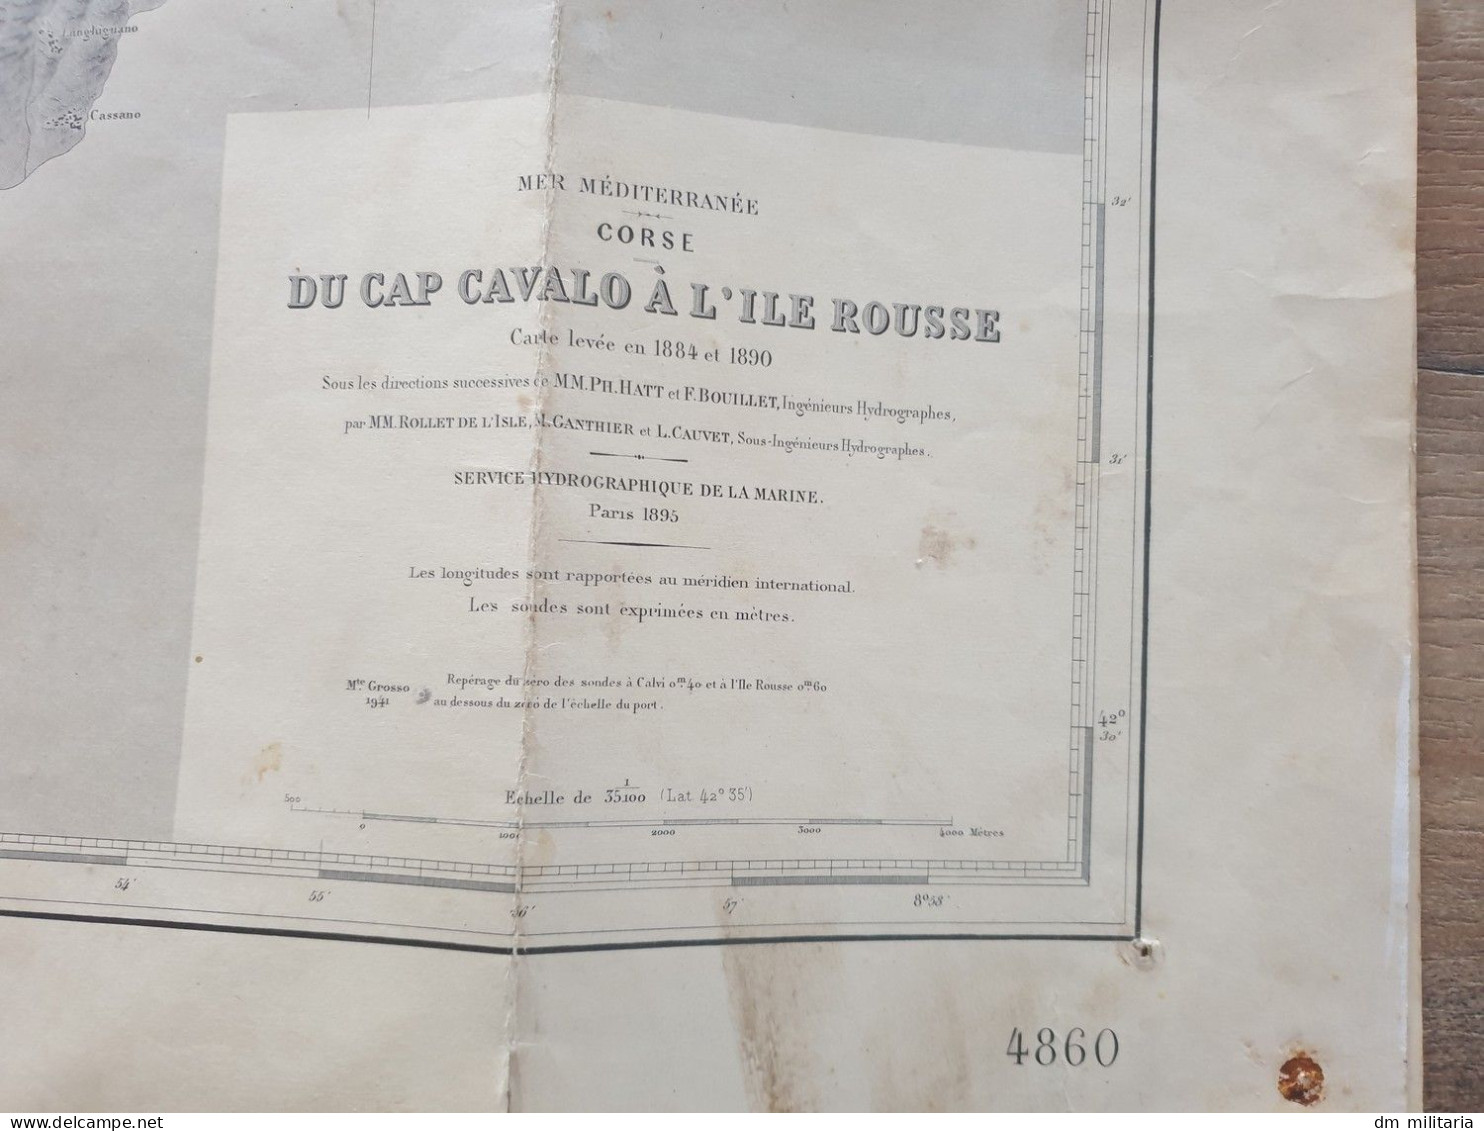 CORSE DU CAP CAVALO À L'ILE ROUSSE CARTE LEVÉE EN 1884 ET 1890 - SERVICE HYDROGRAPIQUE DE LA MARINE 1895 - ÉDITION 1956 - Seekarten